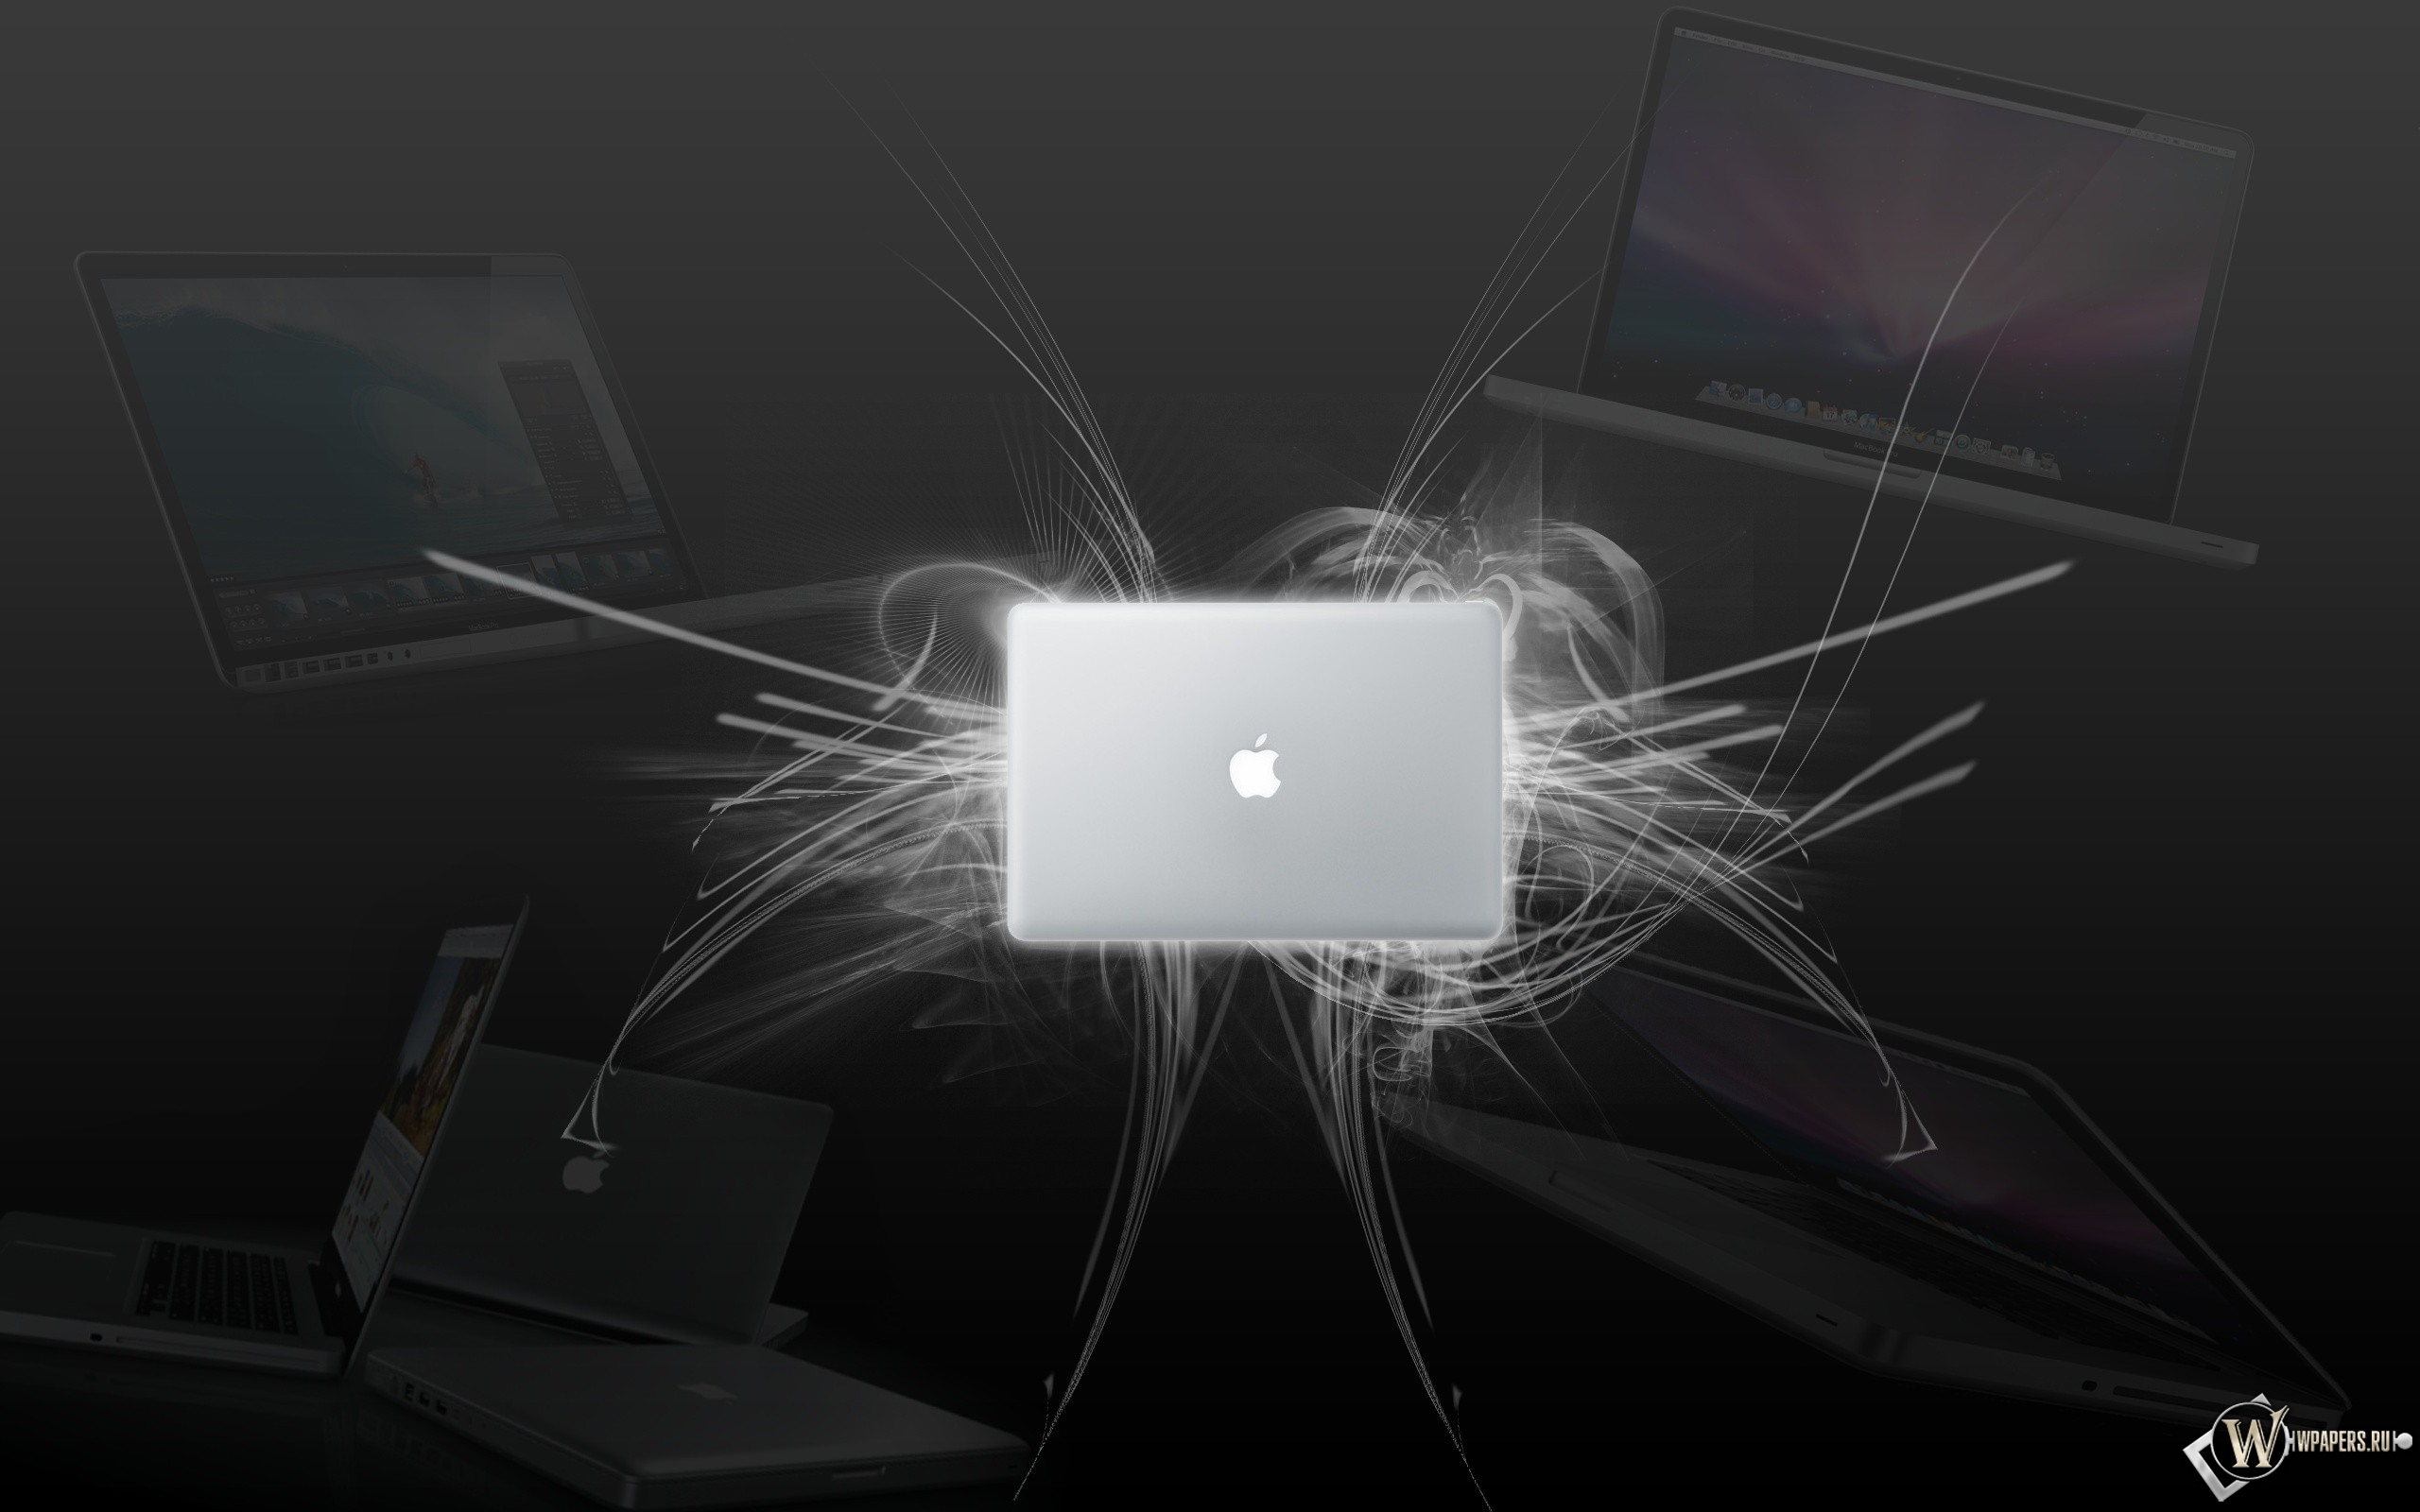 MacBook wallpaper 2560x1600